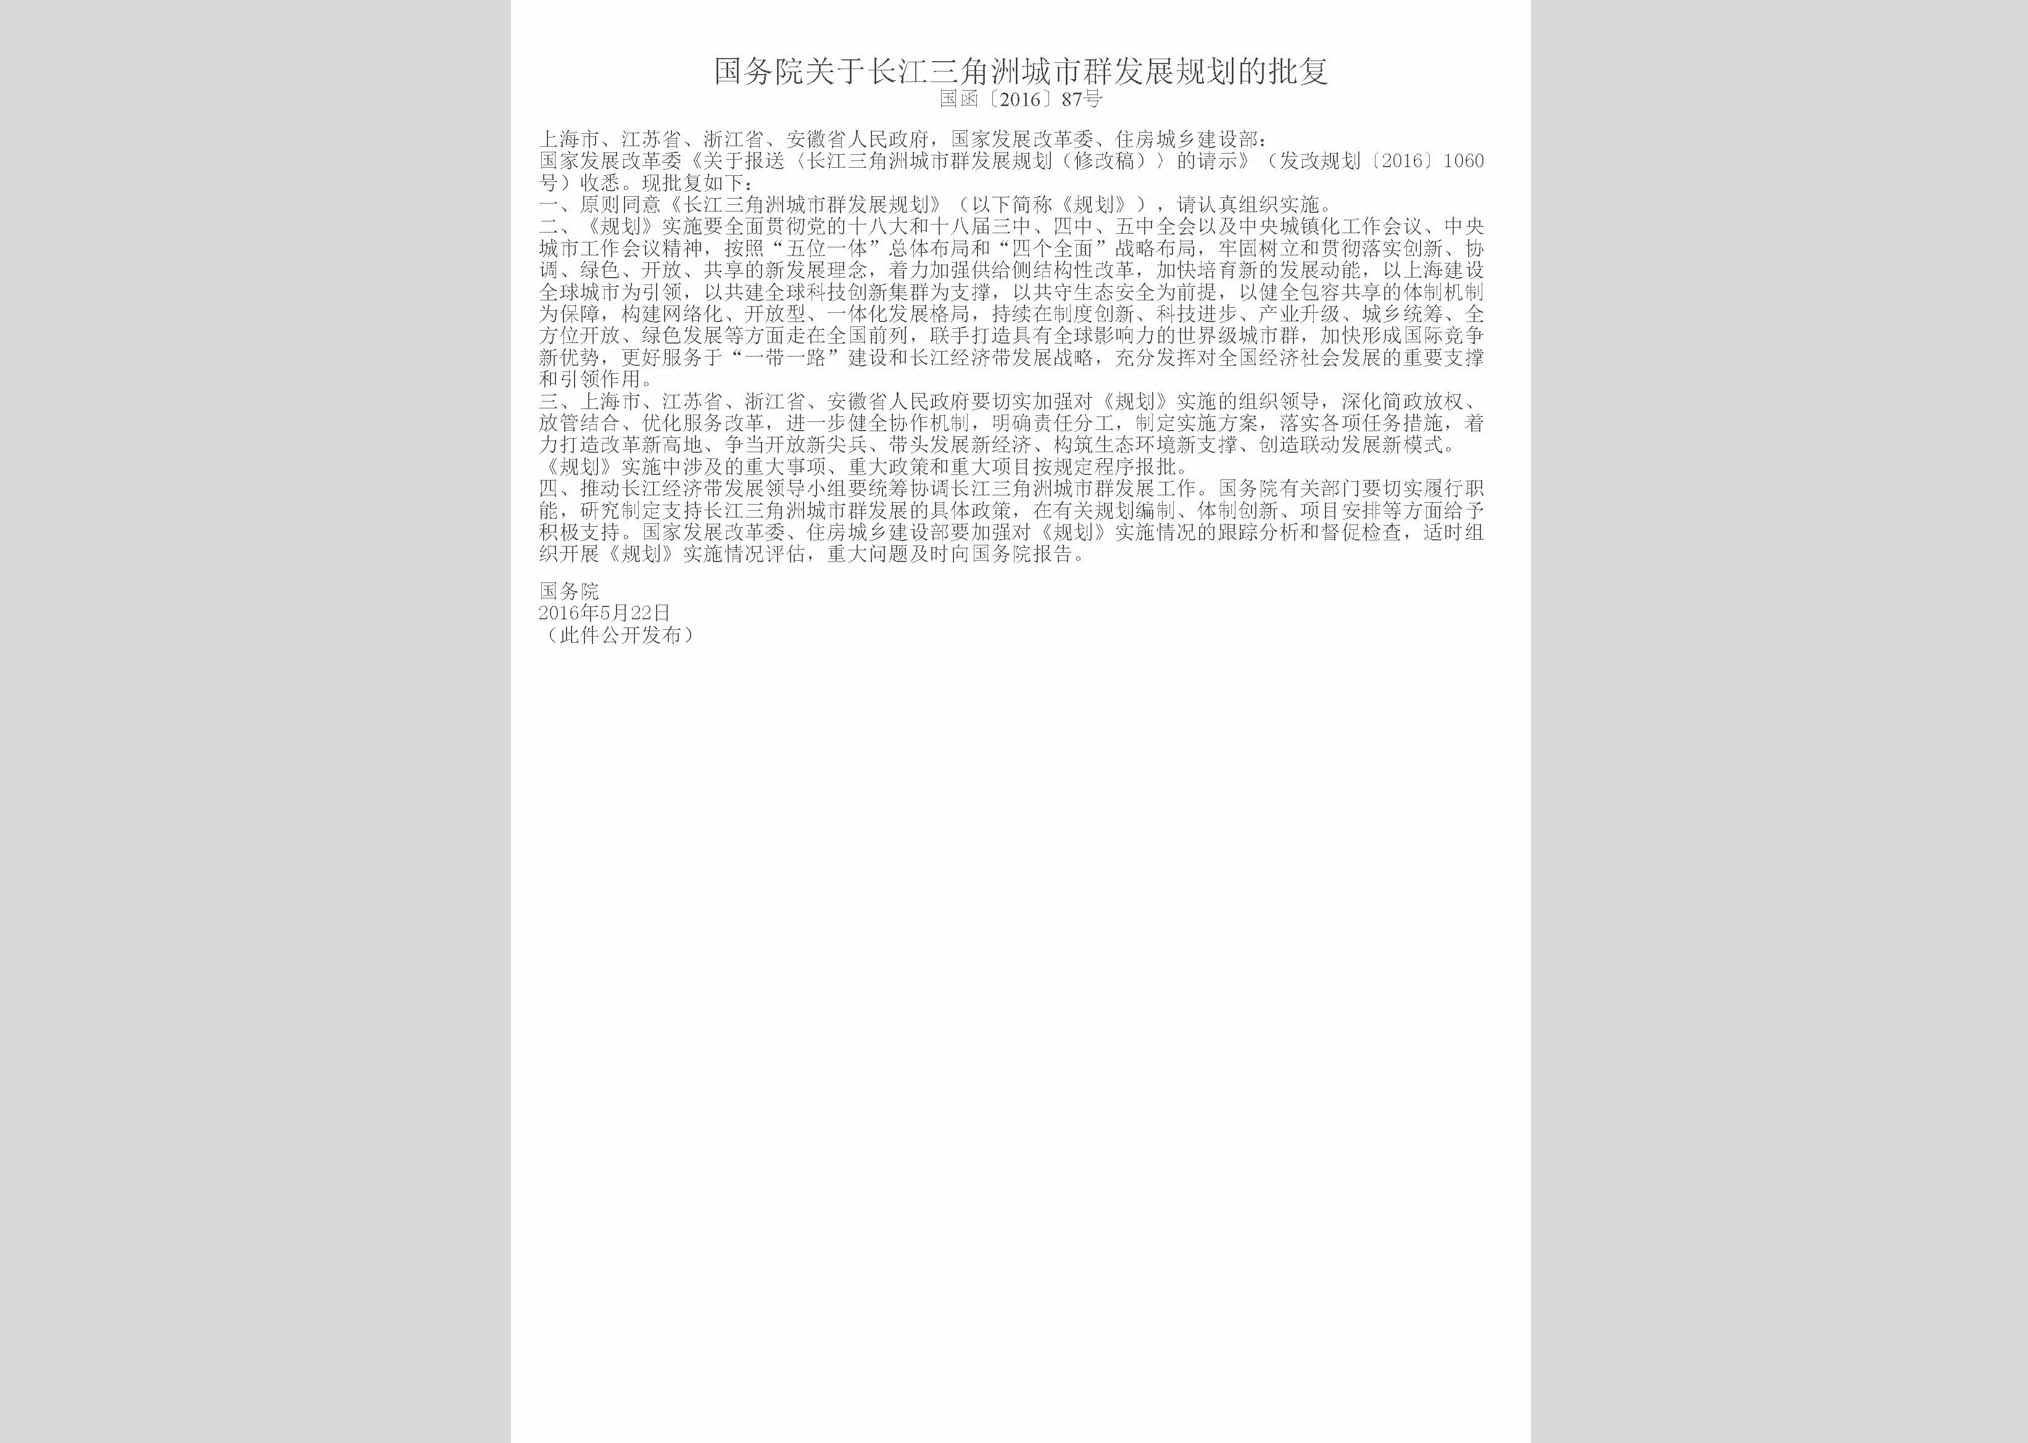 国函[2016]87号：国务院关于长江三角洲城市群发展规划的批复